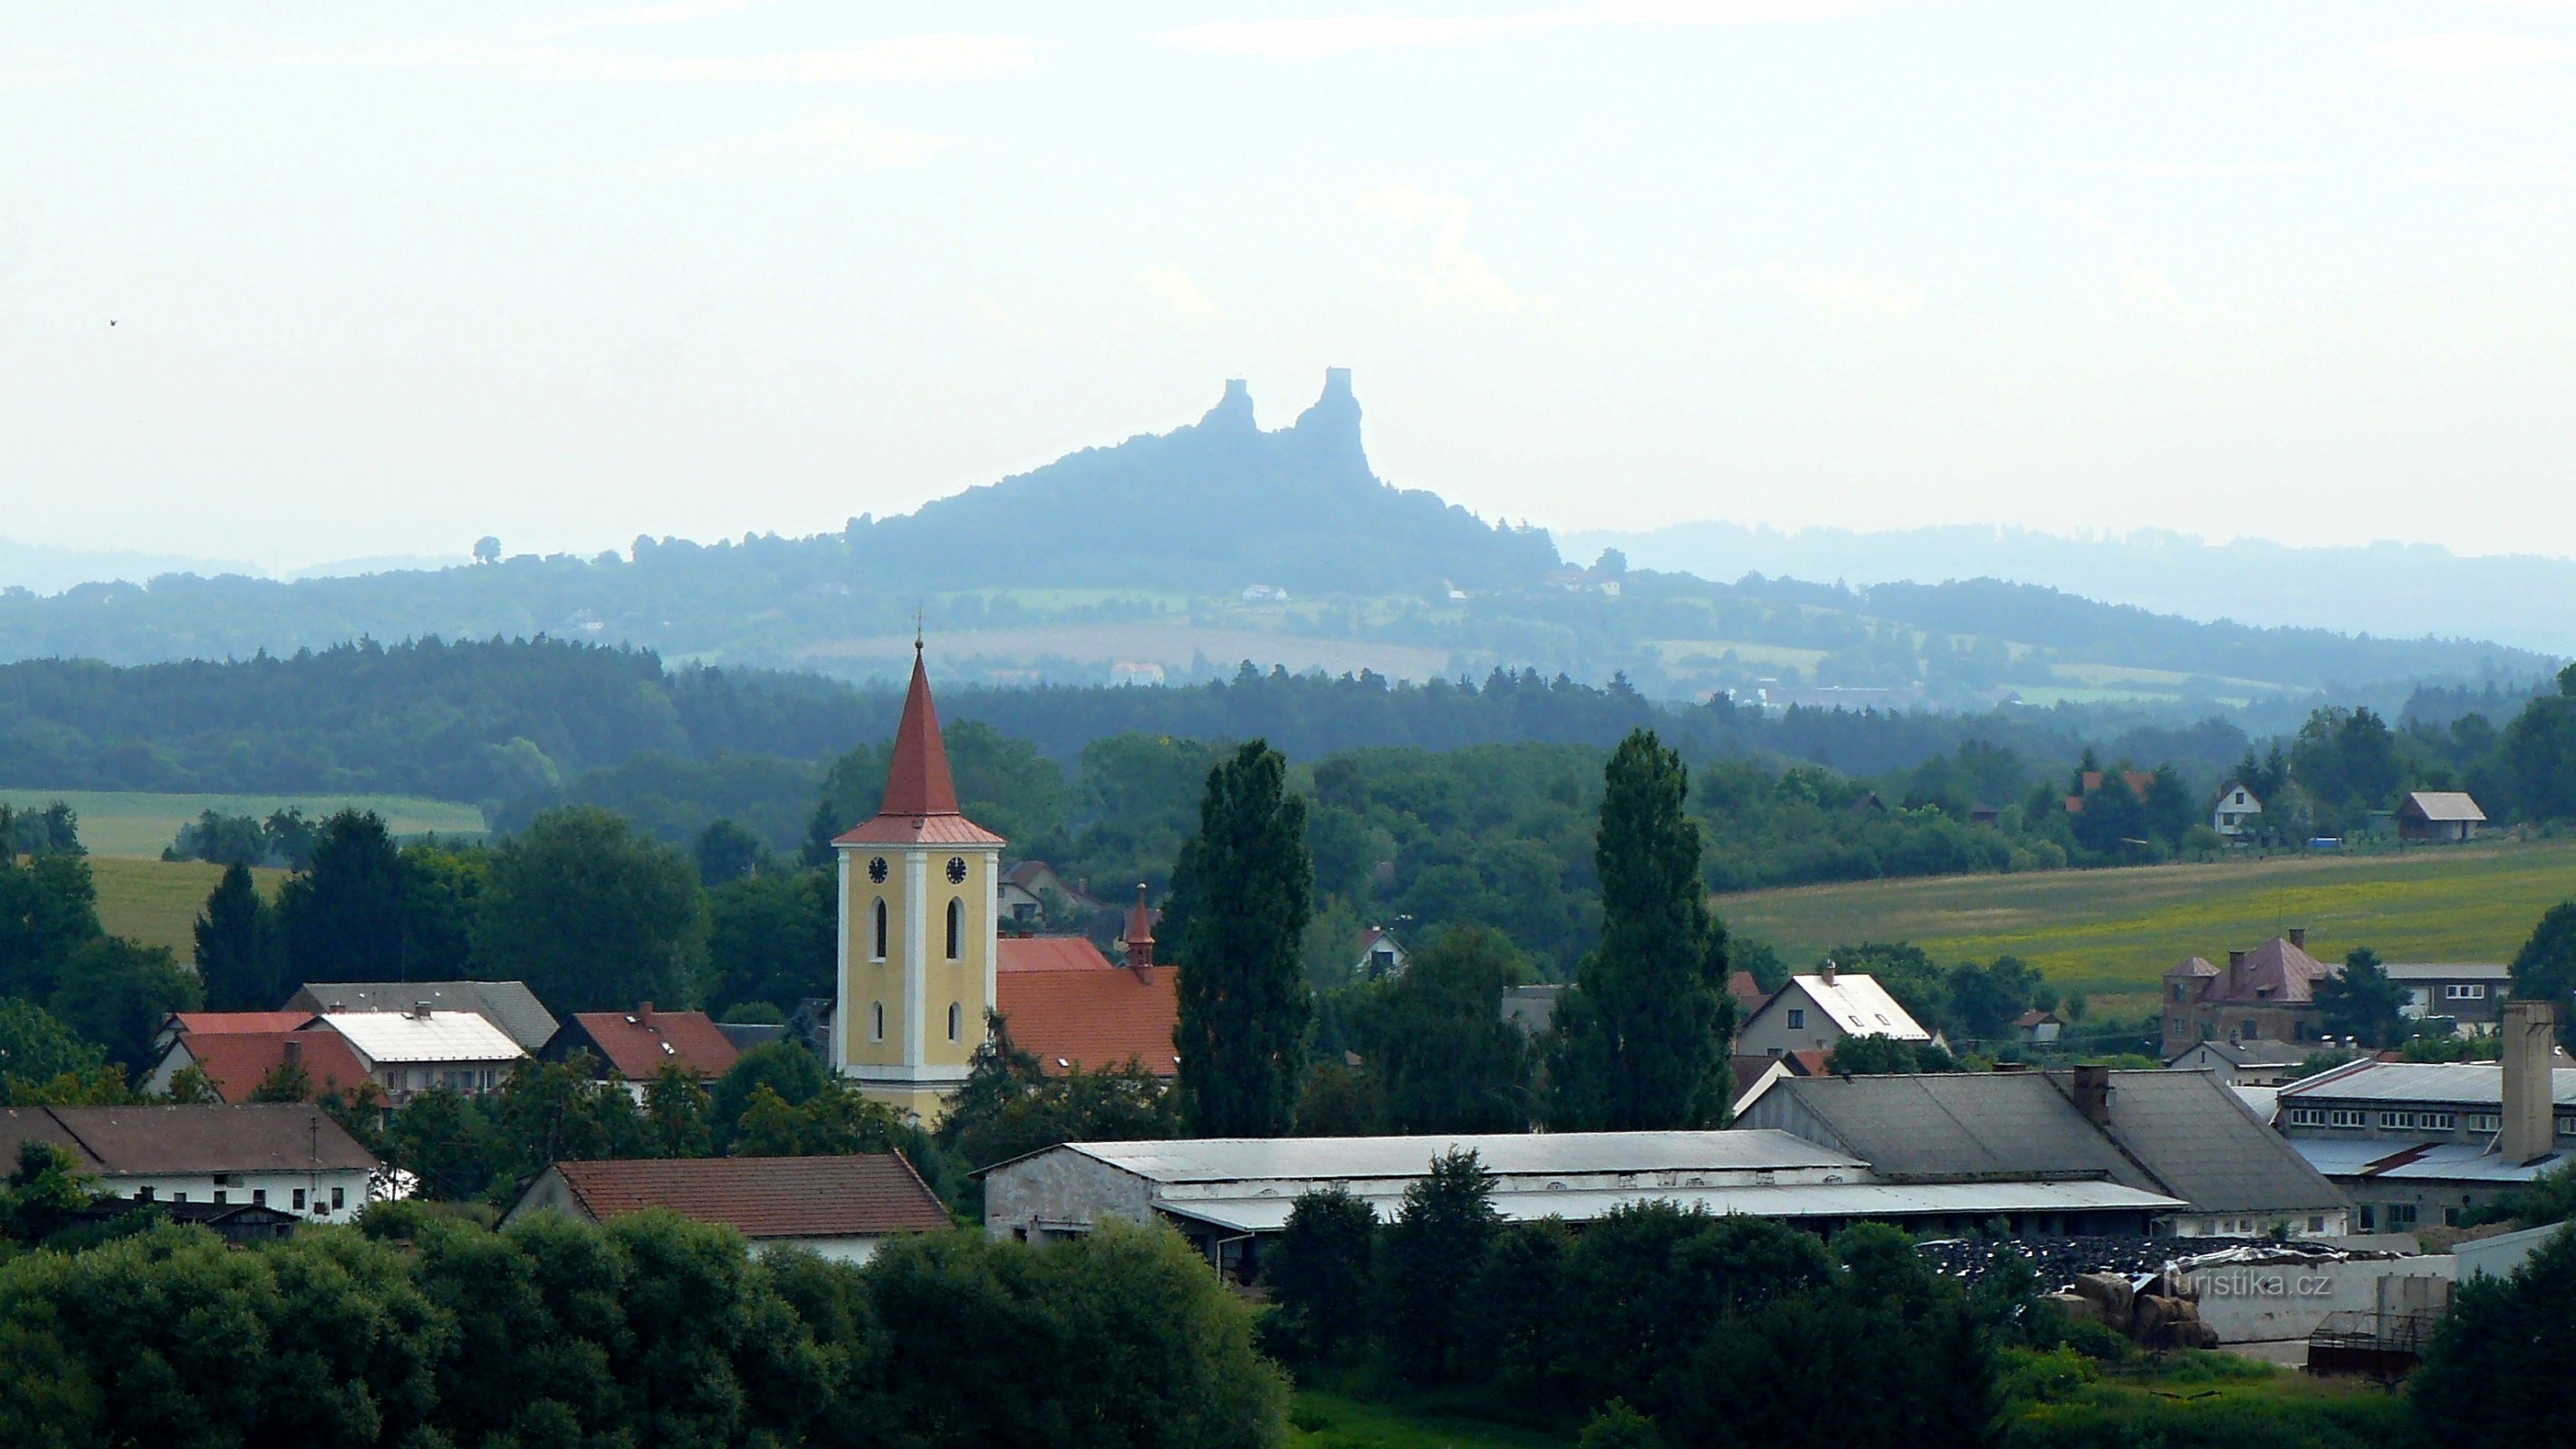 Fra Libošovice til Březina via Krásná vyhlídka